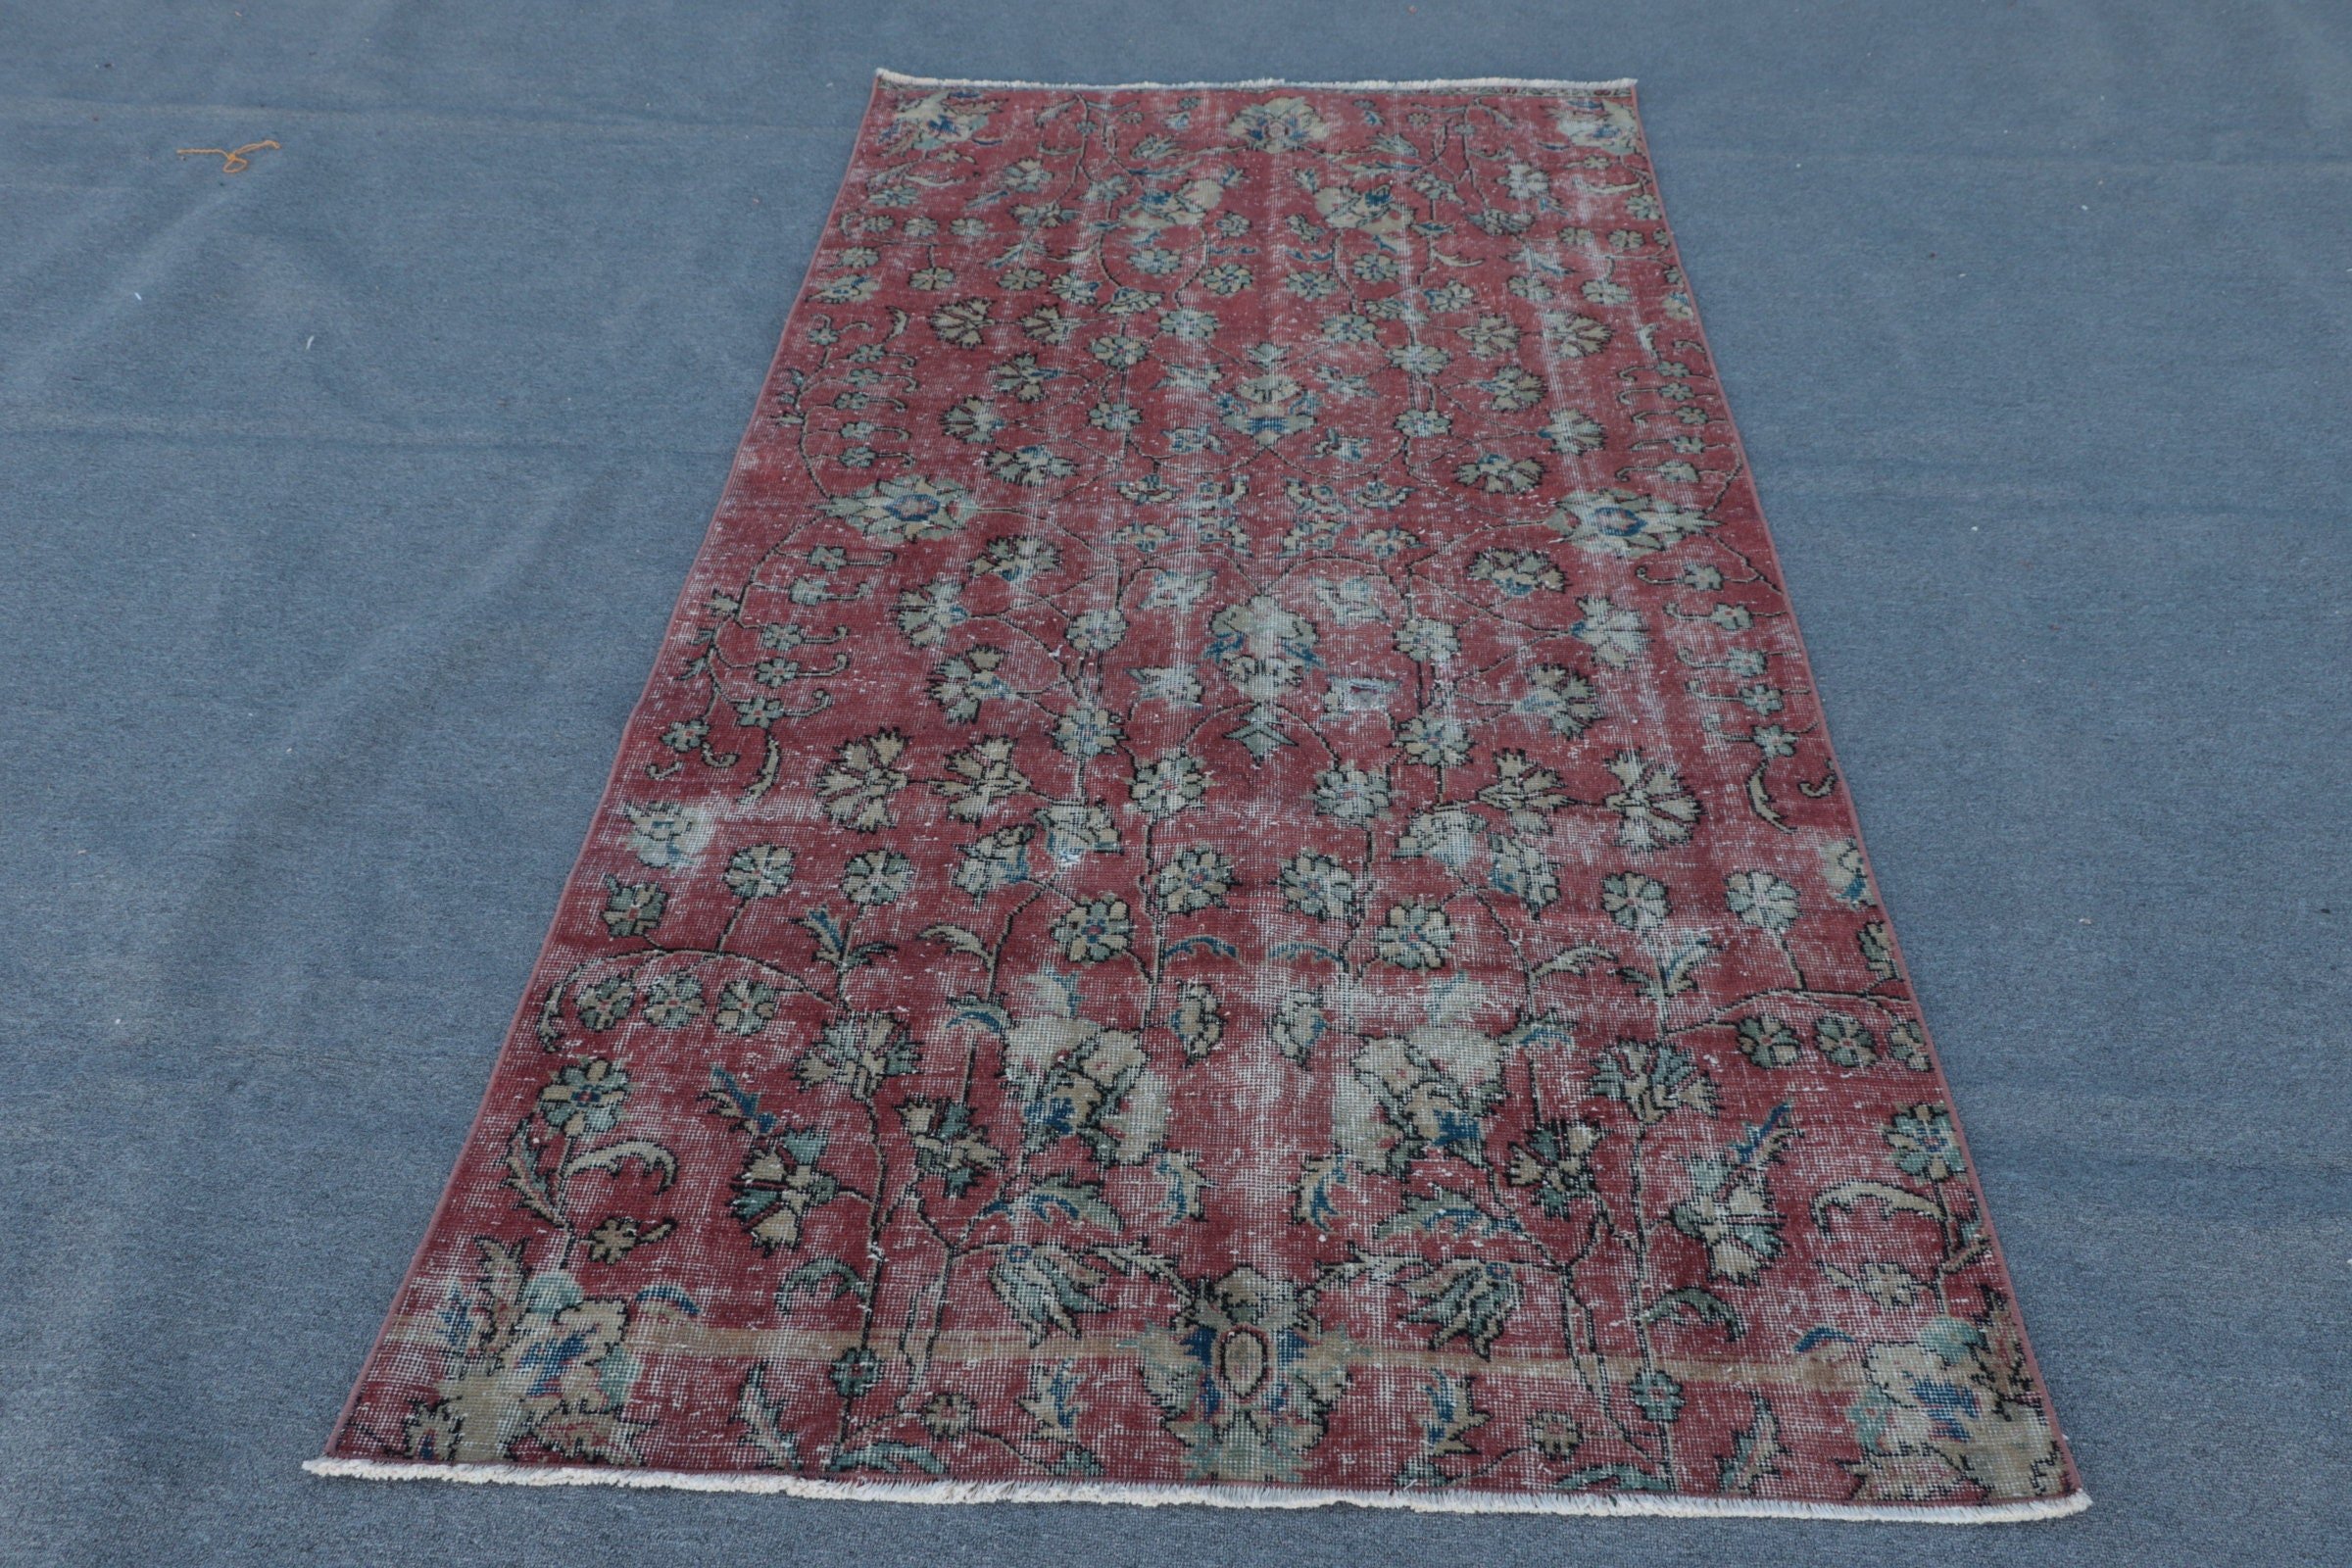 Red Moroccan Rug, Rugs for Floor, Bedroom Rug, Vintage Rug, Living Room Rugs, Home Decor Rugs, Wool Rugs, Turkish Rugs, 4.1x8 ft Area Rugs